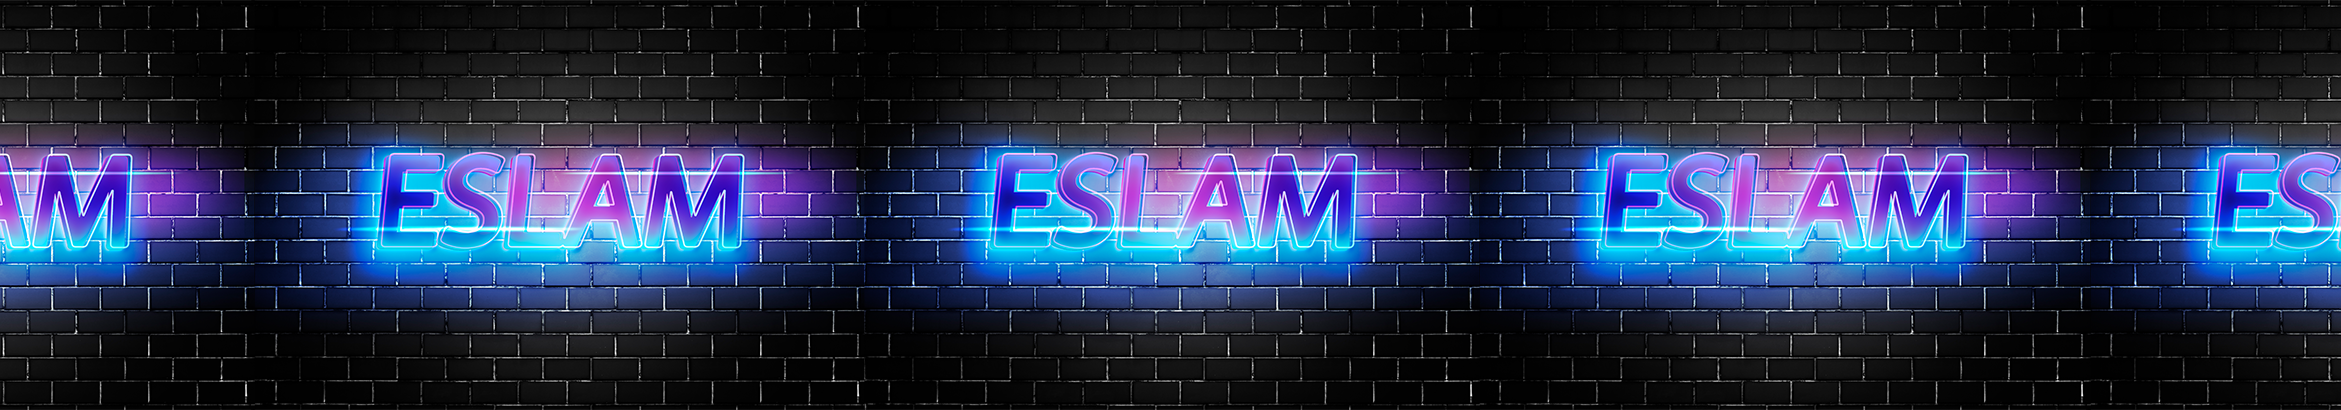 Profielbanner van Eslam Marwan